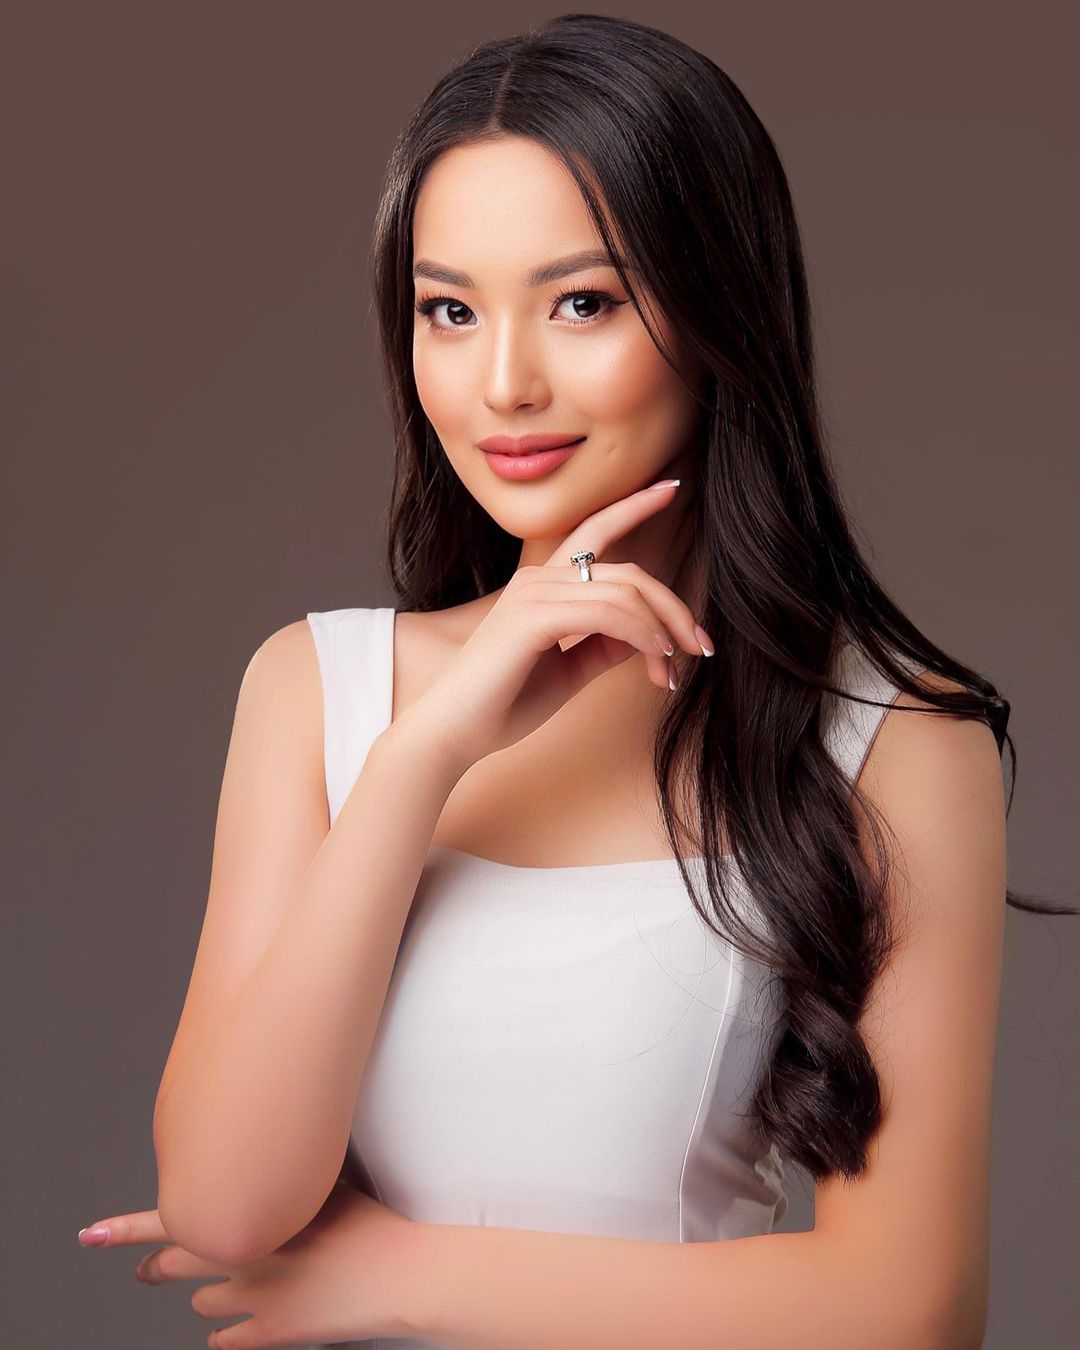 Организаторы конкурса «Мисс Вселенная» извинились перед «Мисс Кыргызстан»